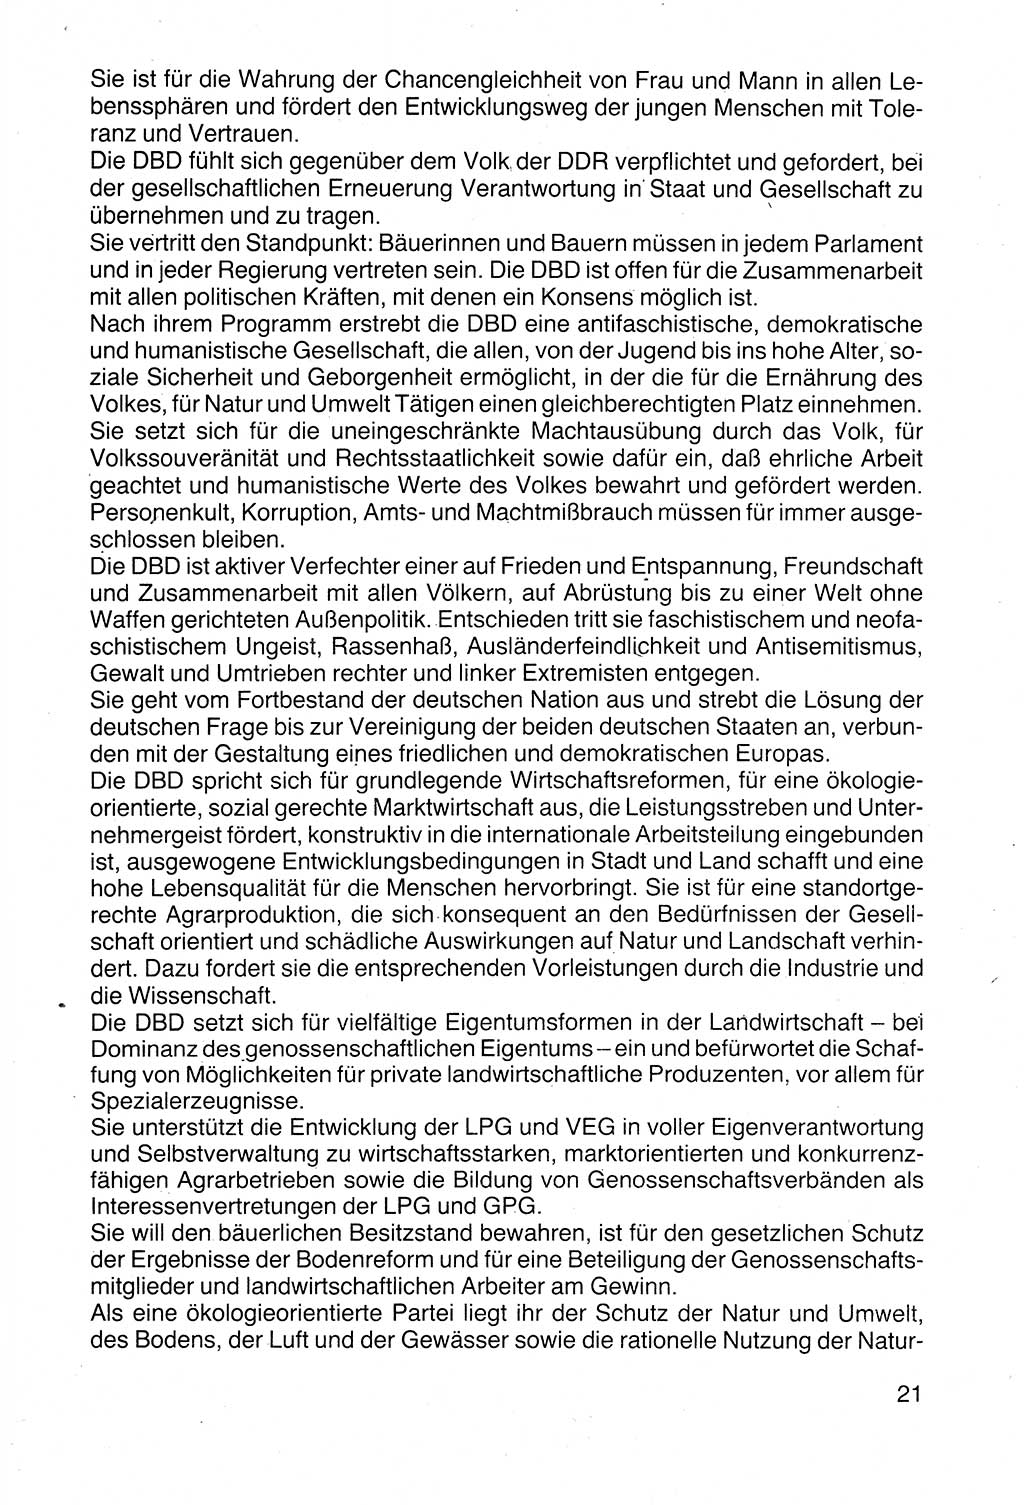 Politische Parteien und Bewegungen der DDR (Deutsche Demokratische Republik) über sich selbst 1990, Seite 21 (Pol. Part. Bew. DDR 1990, S. 21)